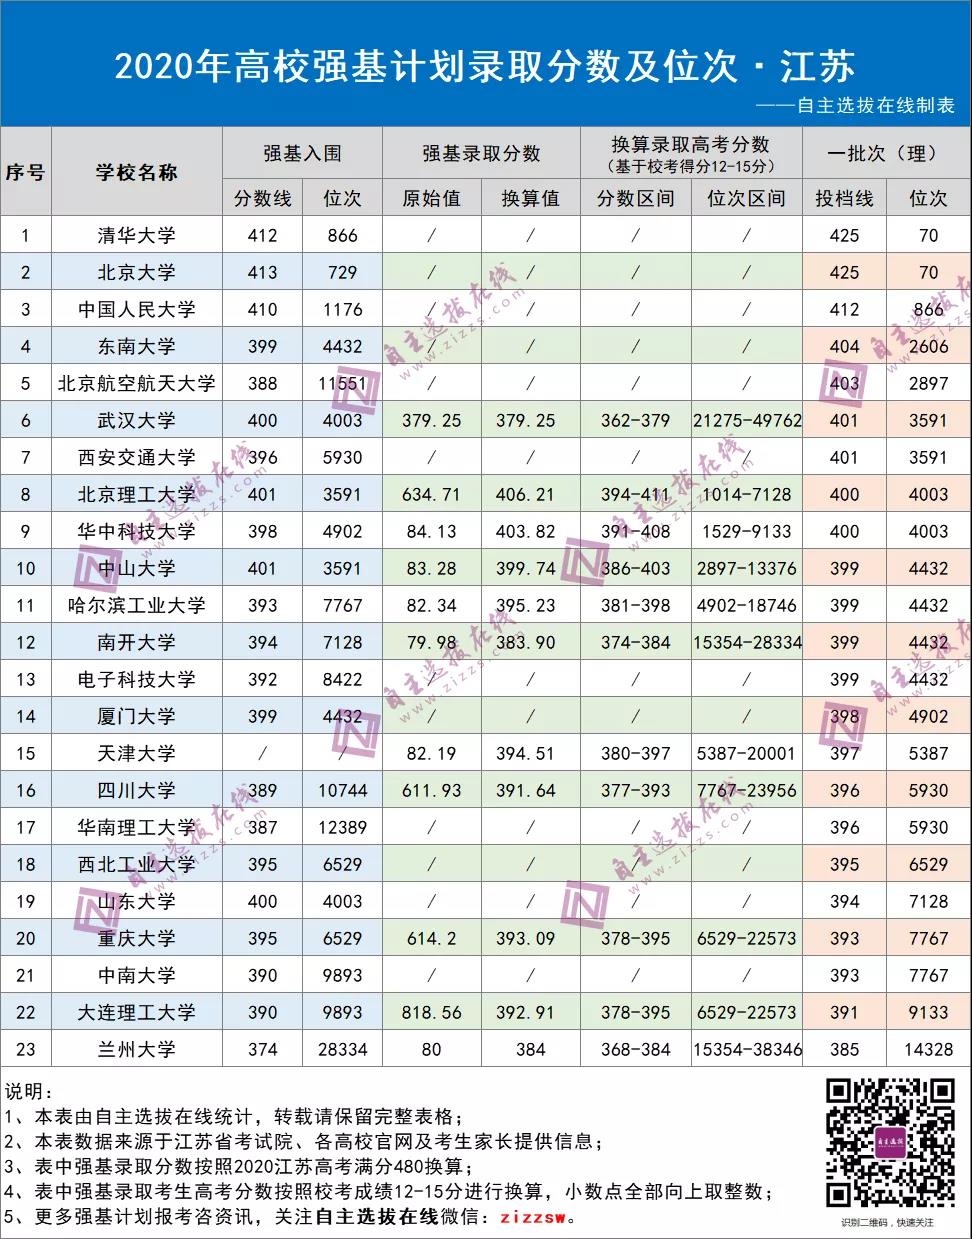 江苏省2020年高校强基计划录取分数及位次